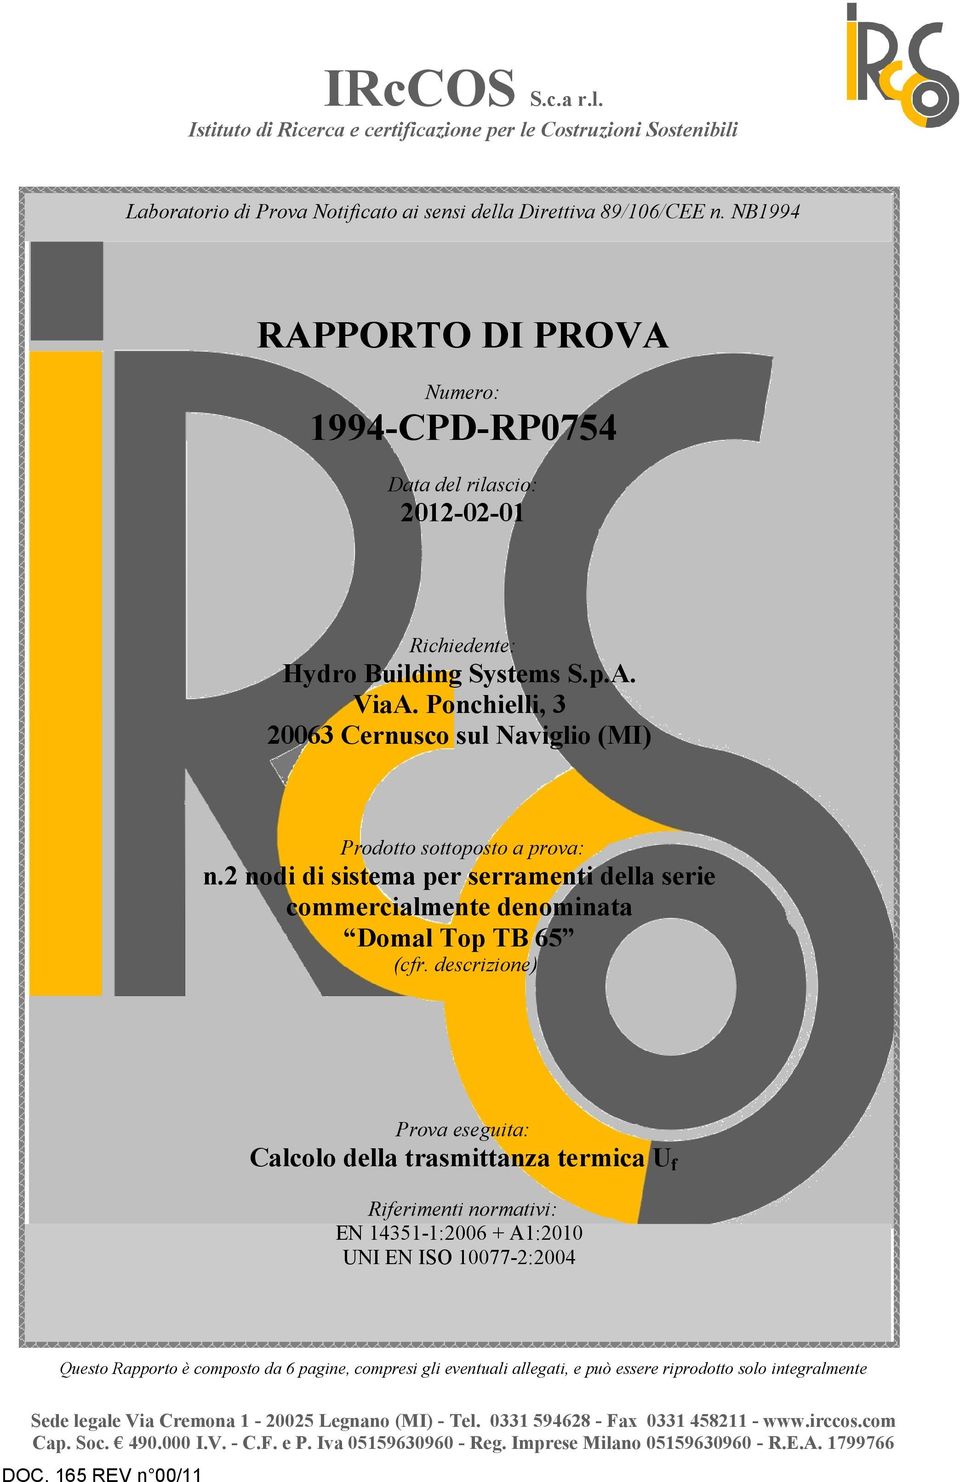 Ponchielli, 3 20063 Cernusco sul Naviglio (MI) Prodotto sottoposto a prova: n.2 nodi di sistema per serramenti della serie commercialmente denominata Domal Top TB 65 (cfr.